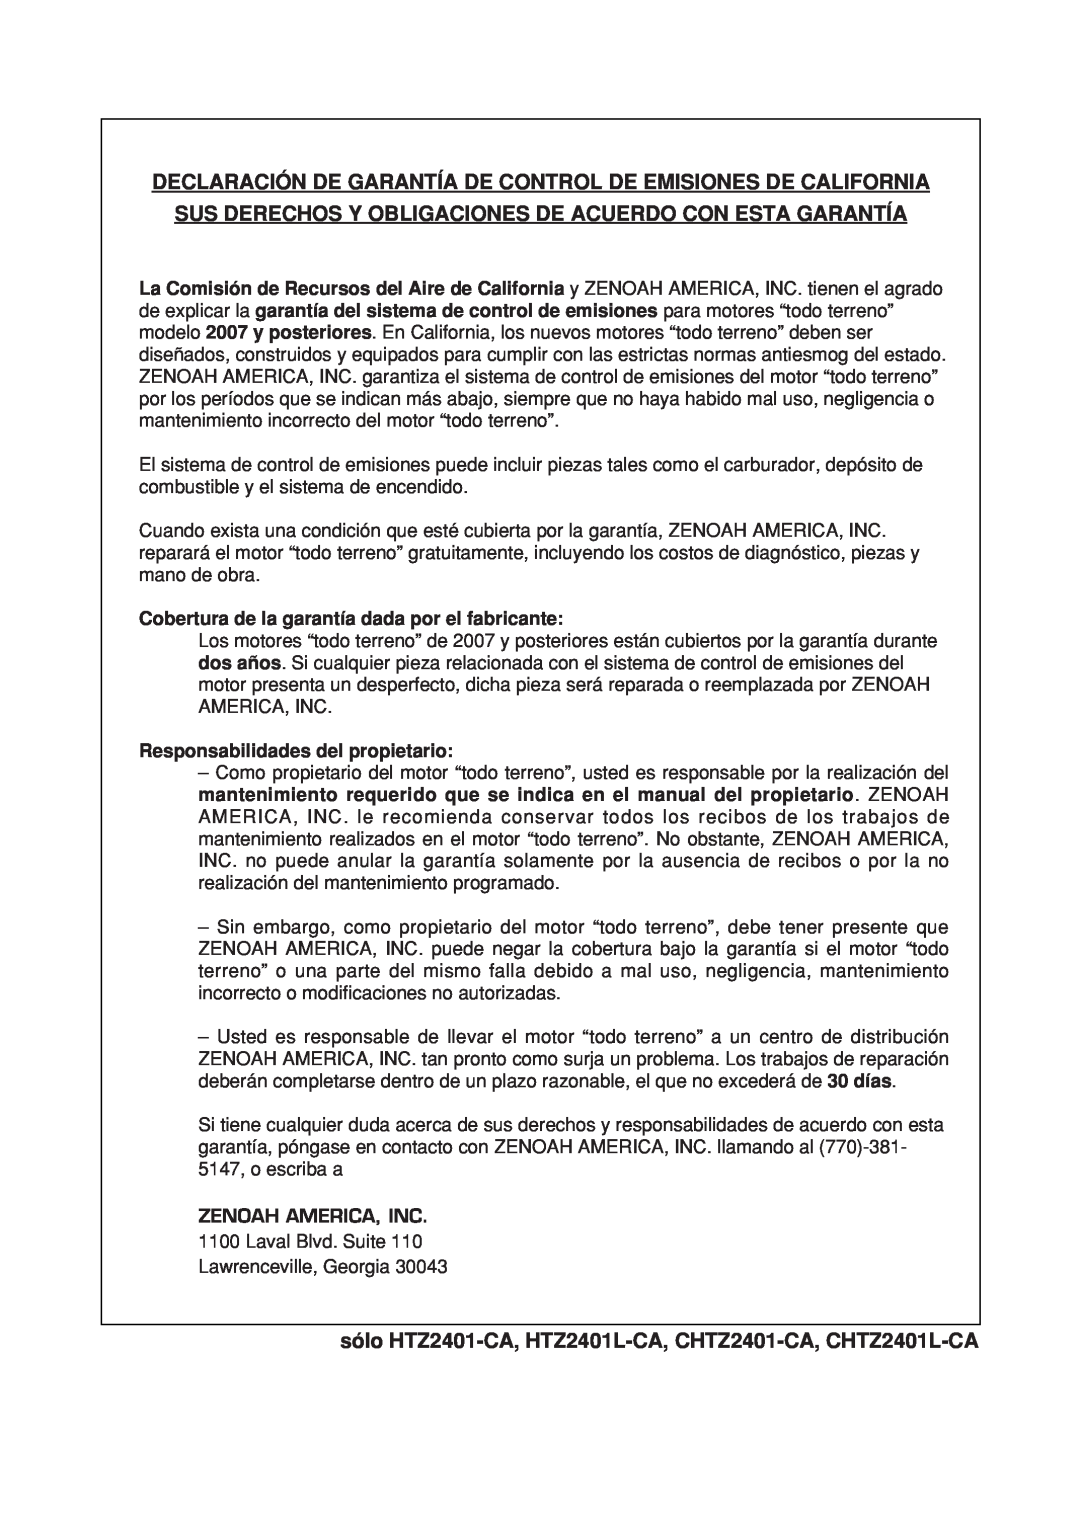 Zenoah CHTZ2401-CA manual Declaración De Garantía De Control De Emisiones De California, Responsabilidades del propietario 